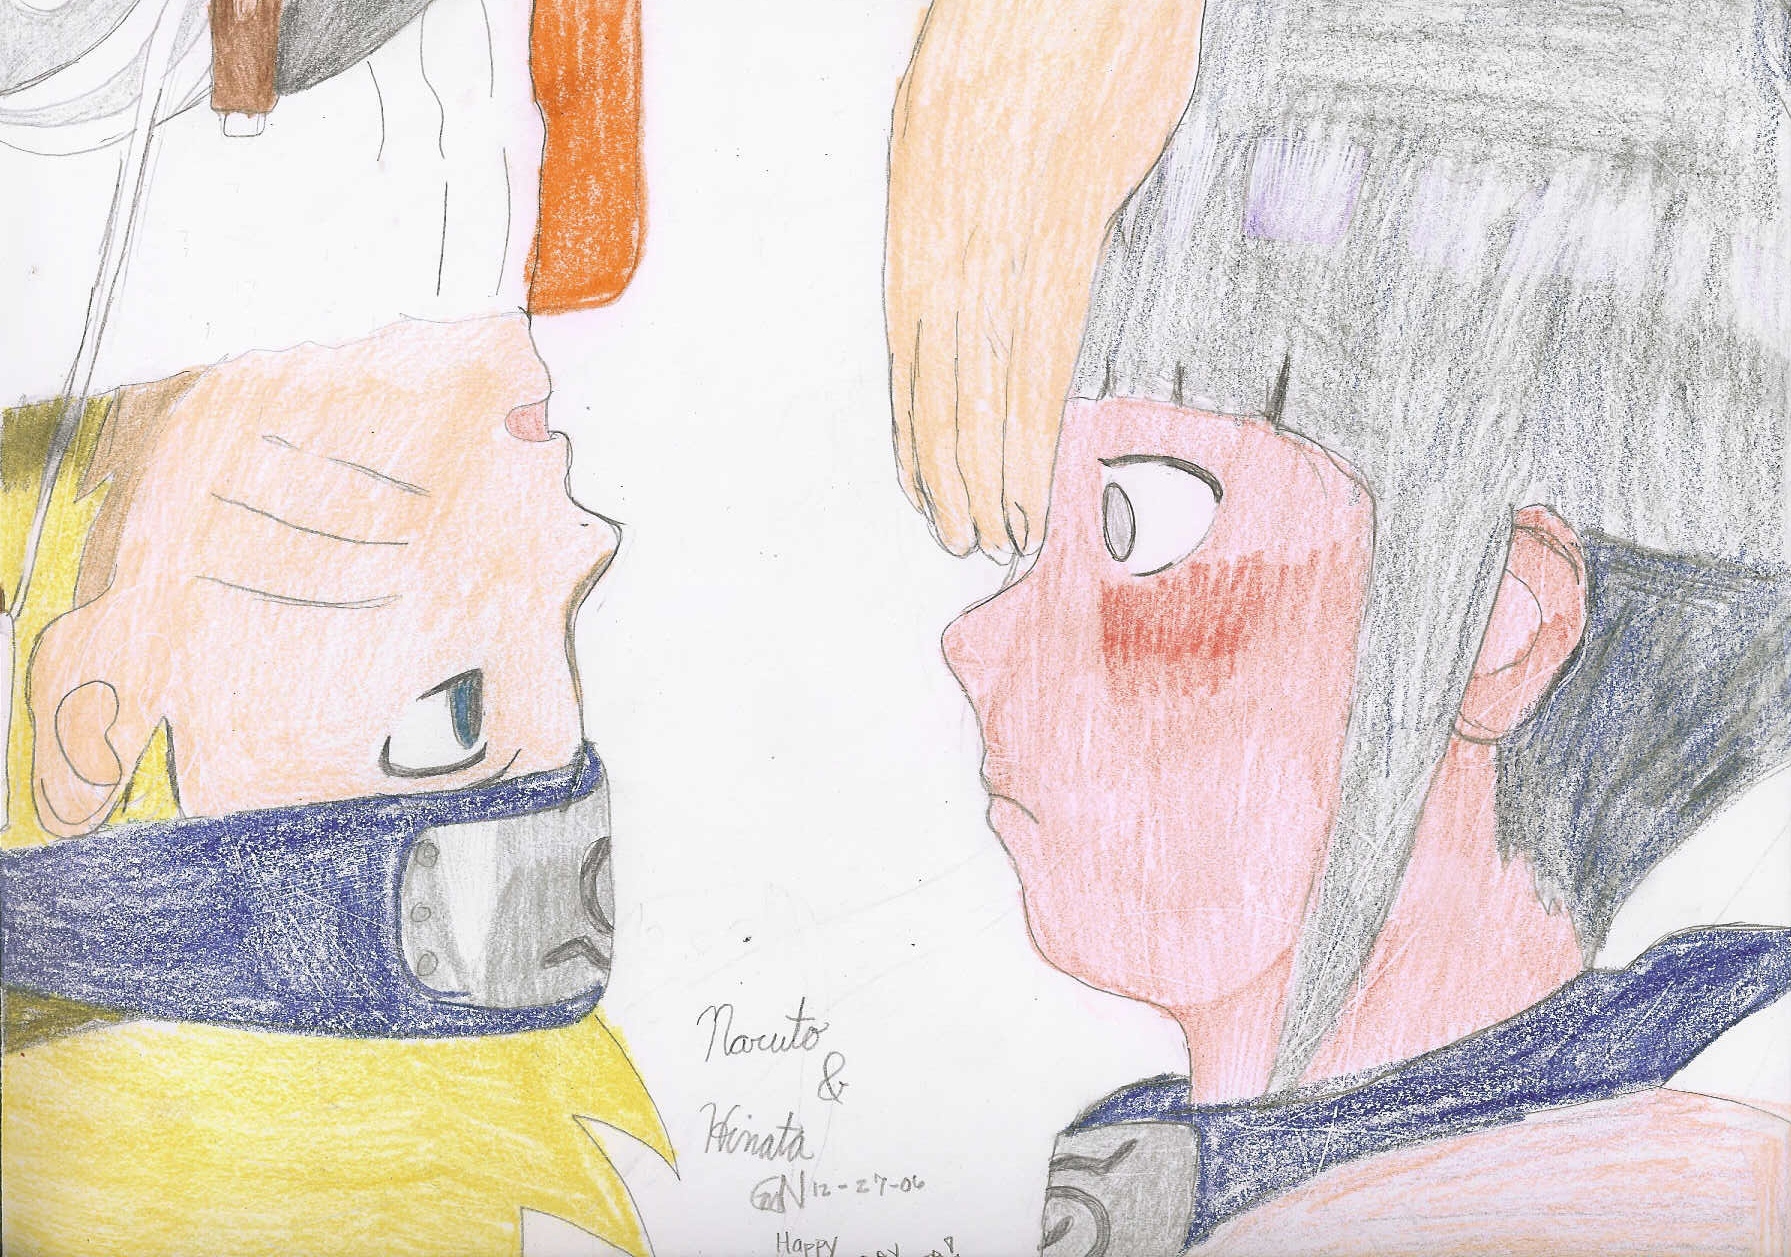 Naruto and Hinata by Sasuke_Uchiha1121